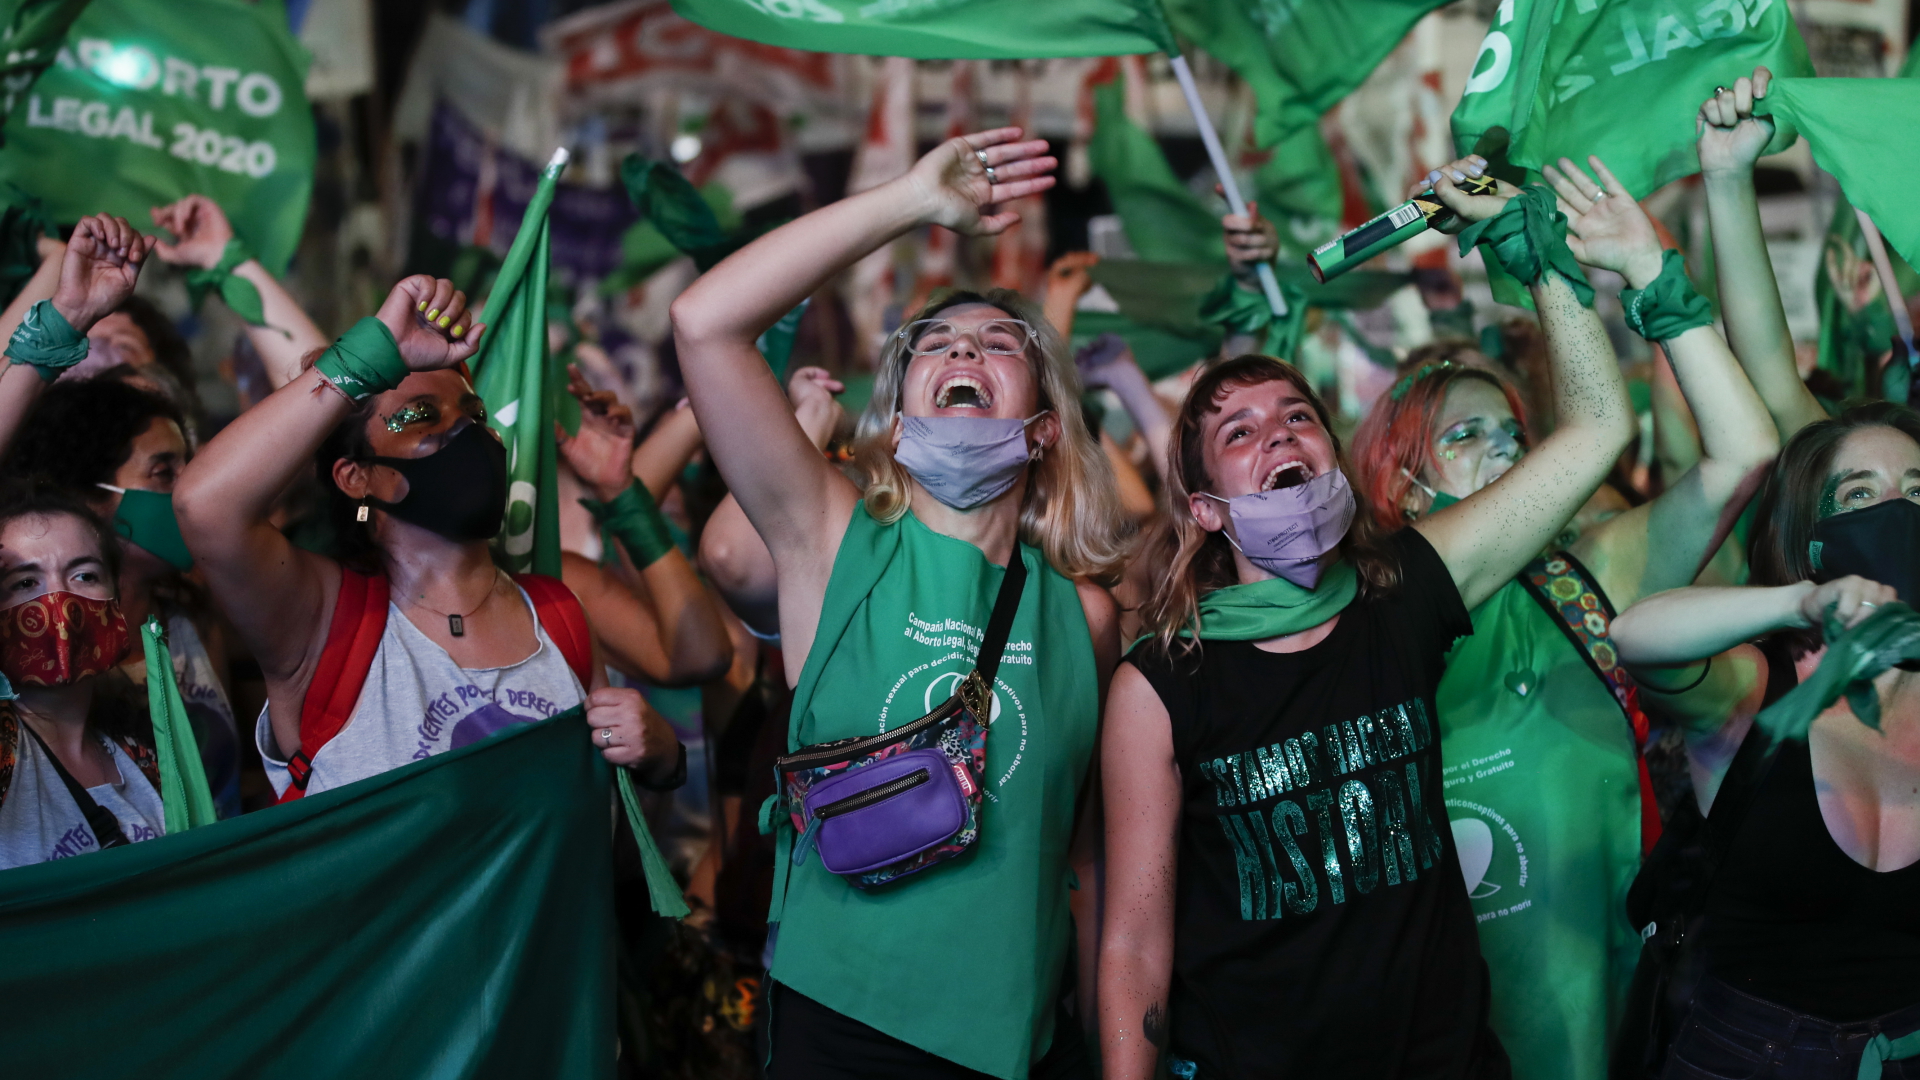 Befürworterinnen der Legalisierung von Abtreibungen feiern außerhalb des argentinischen Kongresses.